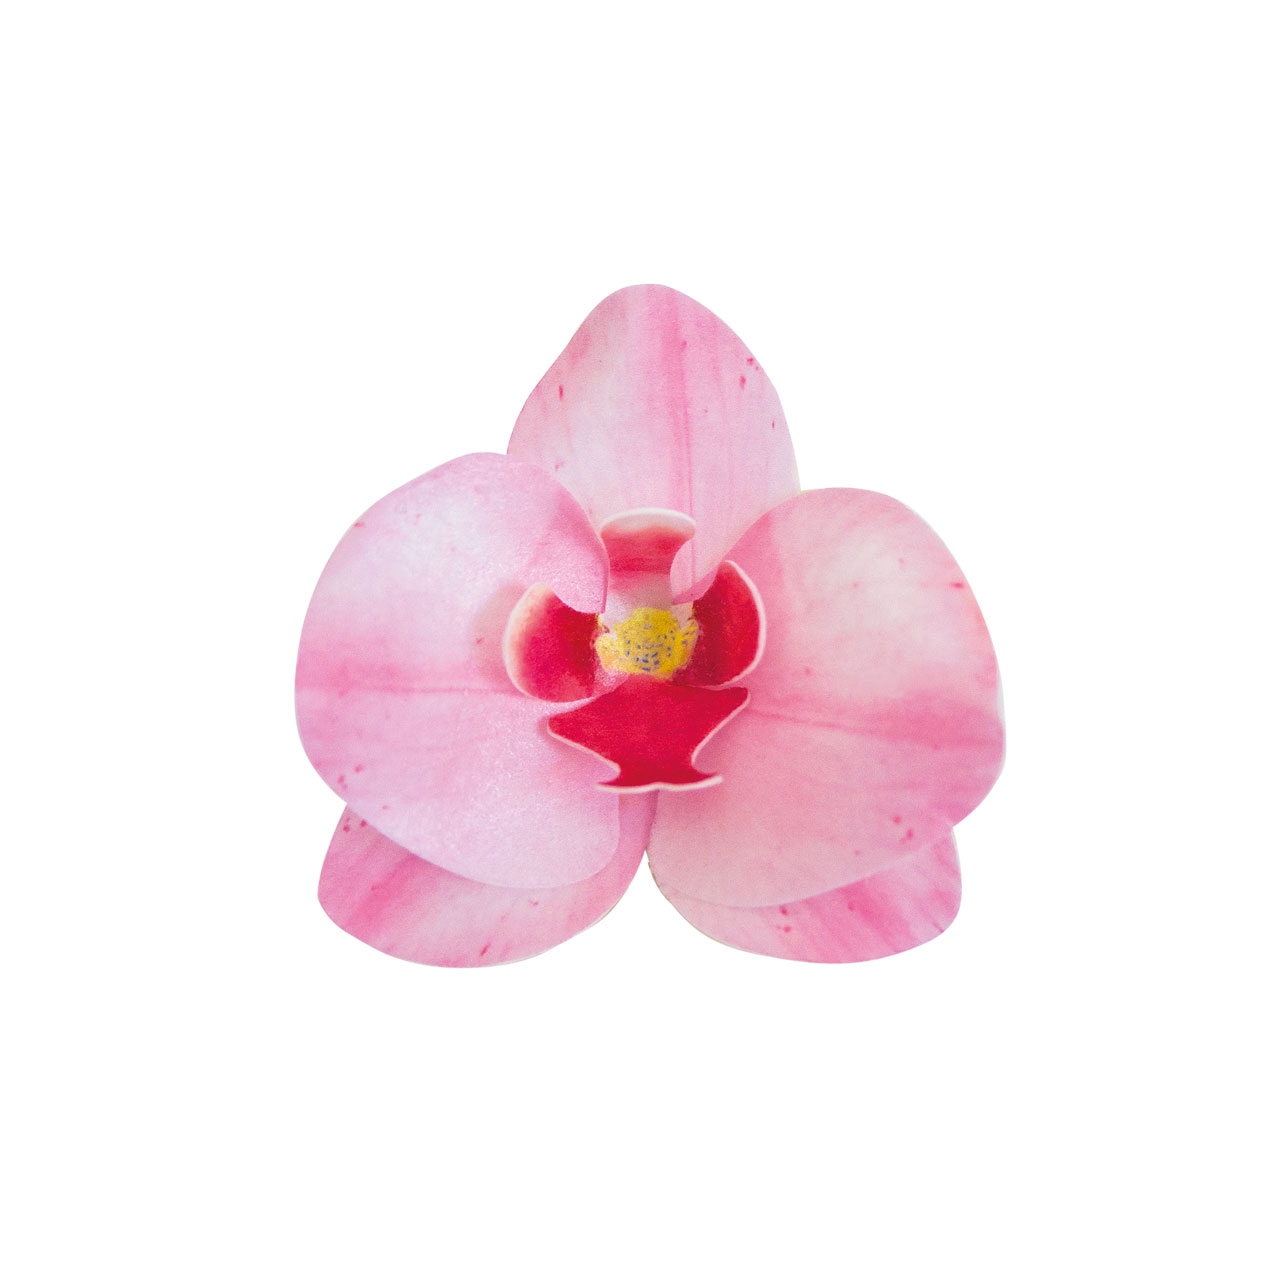 10 x Wafer Orchidee - Rosa - 8,5x7,5 cm (Waferdeko / Oblaten Blume) - Dekora